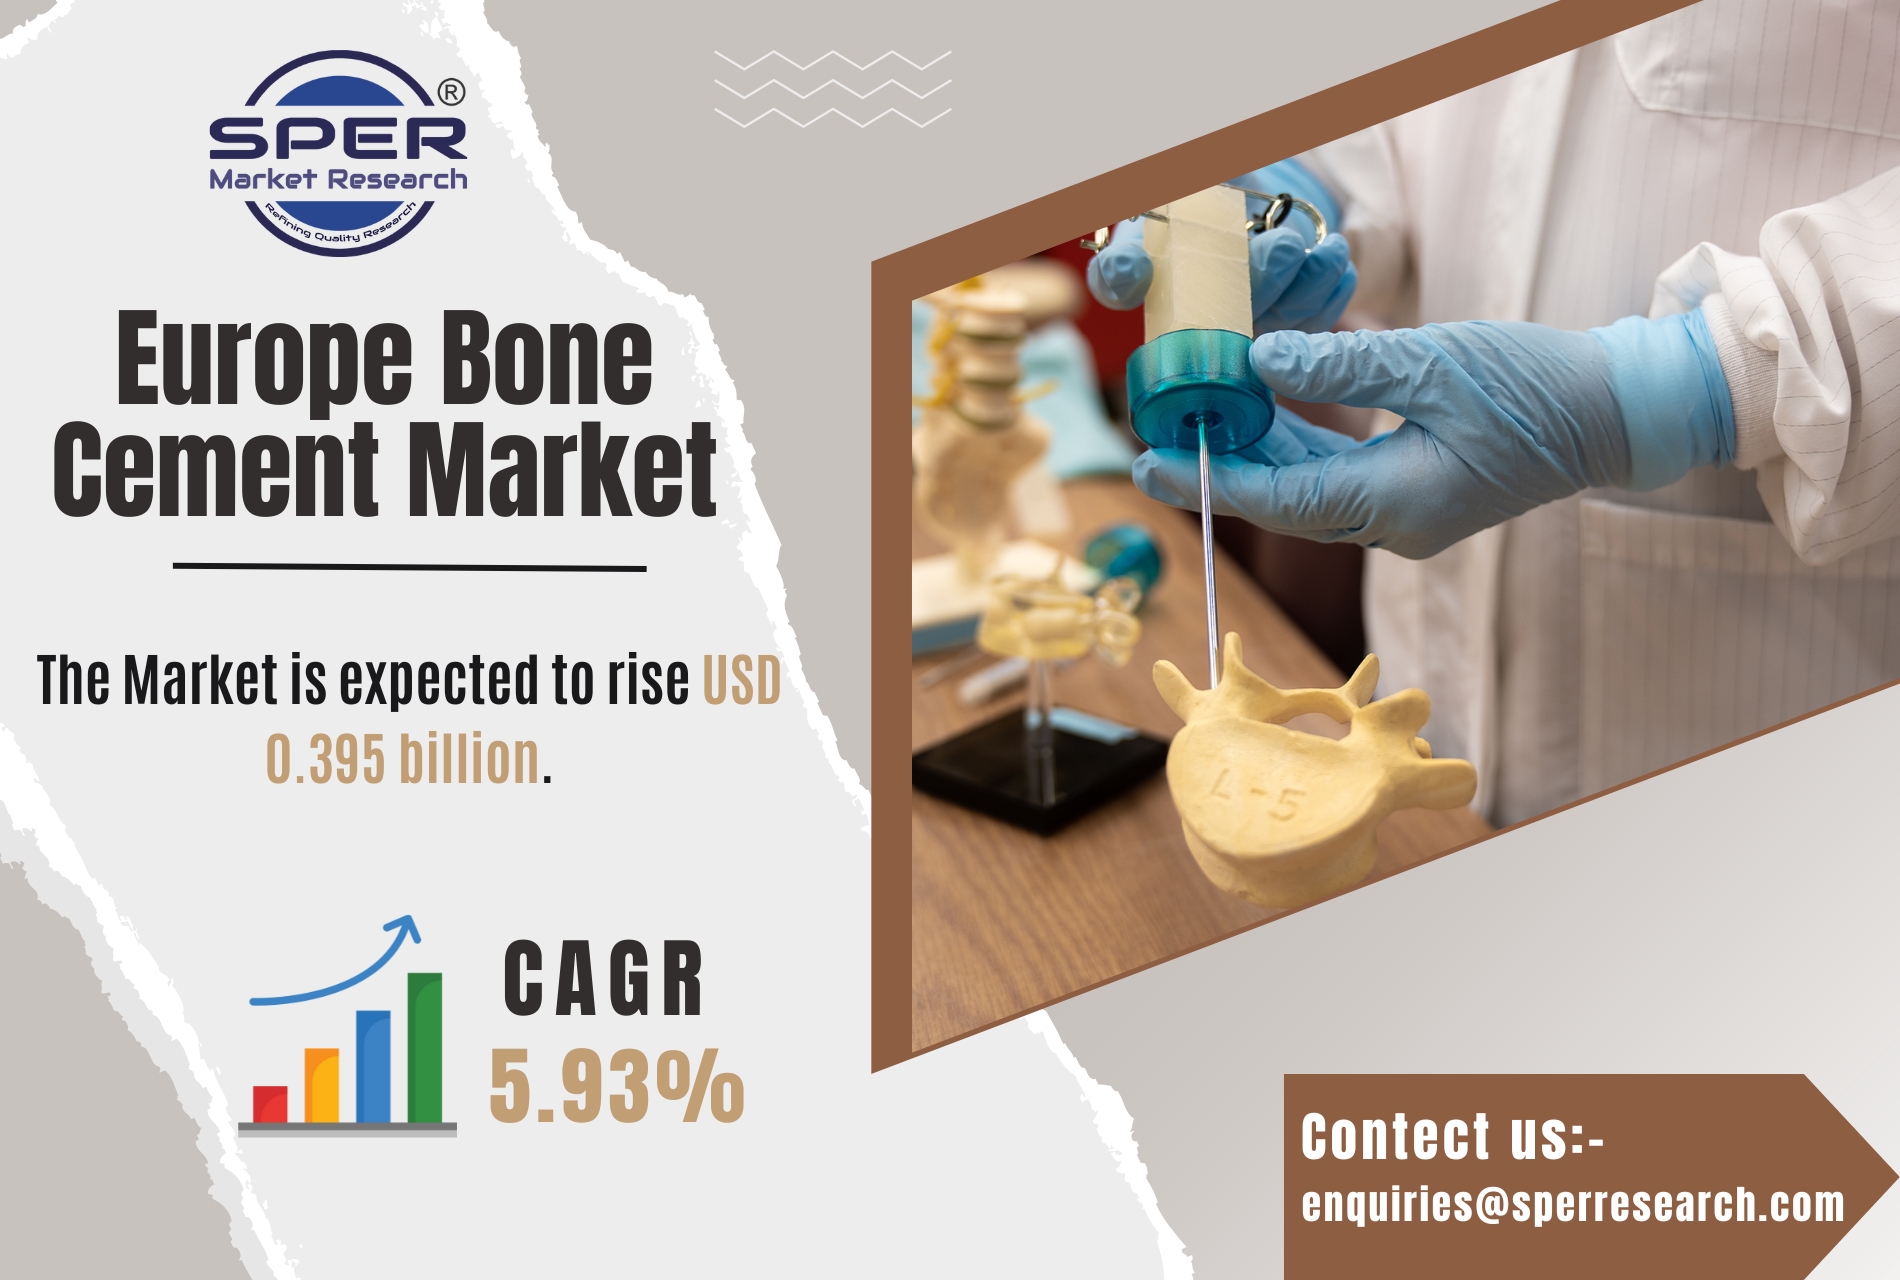 Europe Bone Cement Market